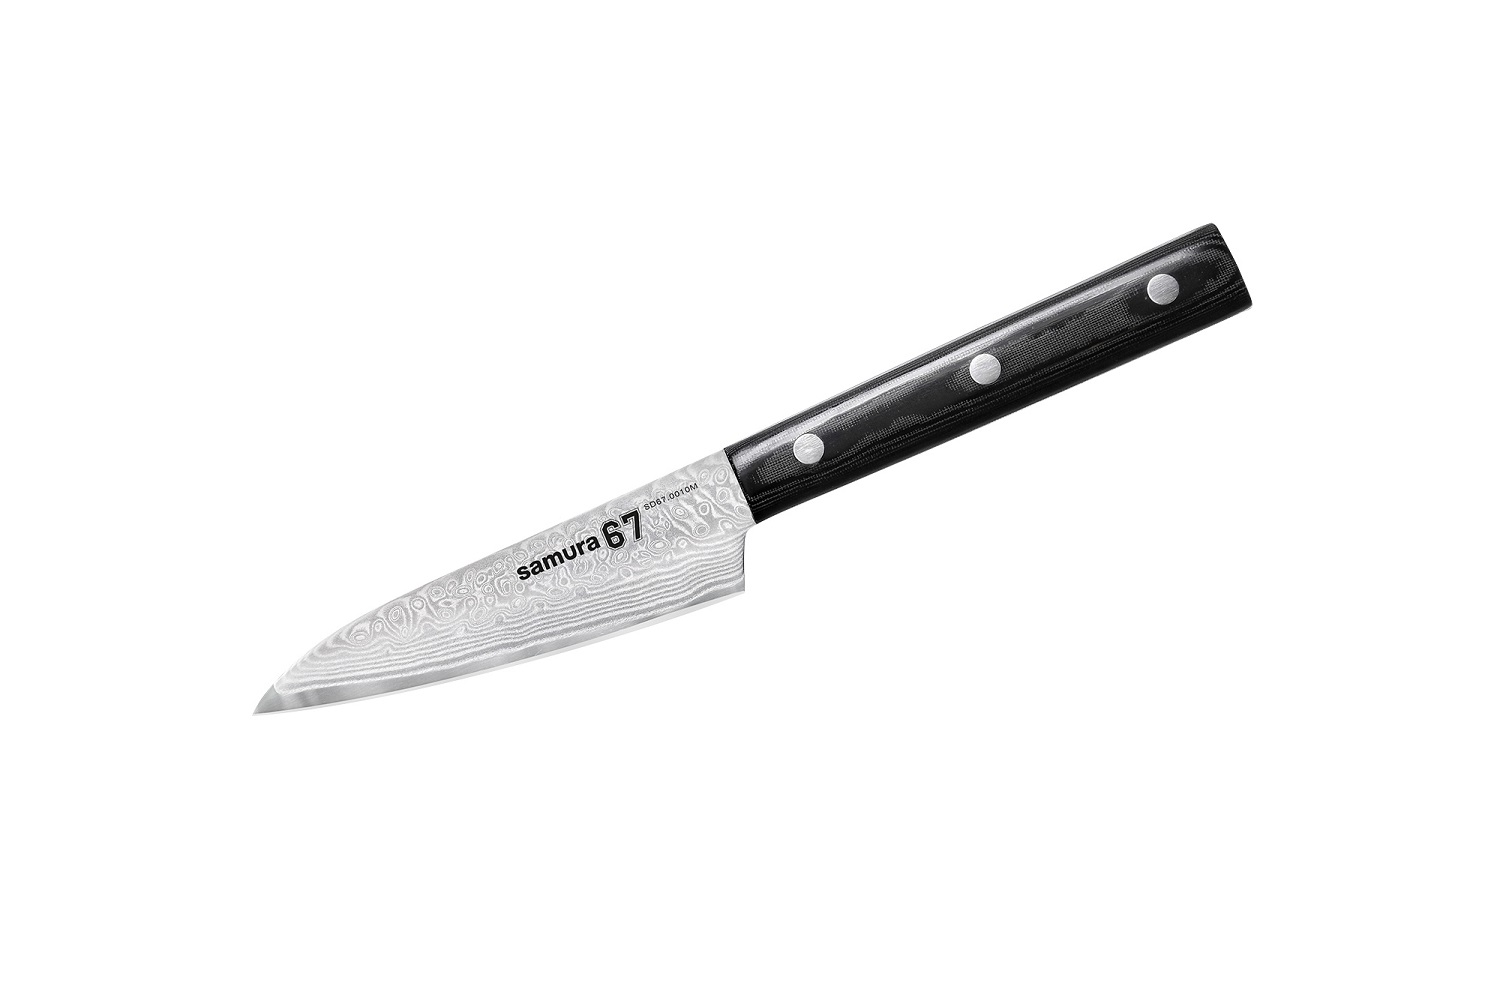 Нож Samura овощной 67, 9,8 см, дамаск 67 слоев, микарта нож кухонный для хлеба samura damascus sd 0055 16 g 10 дамаск 67 слоев 230 мм